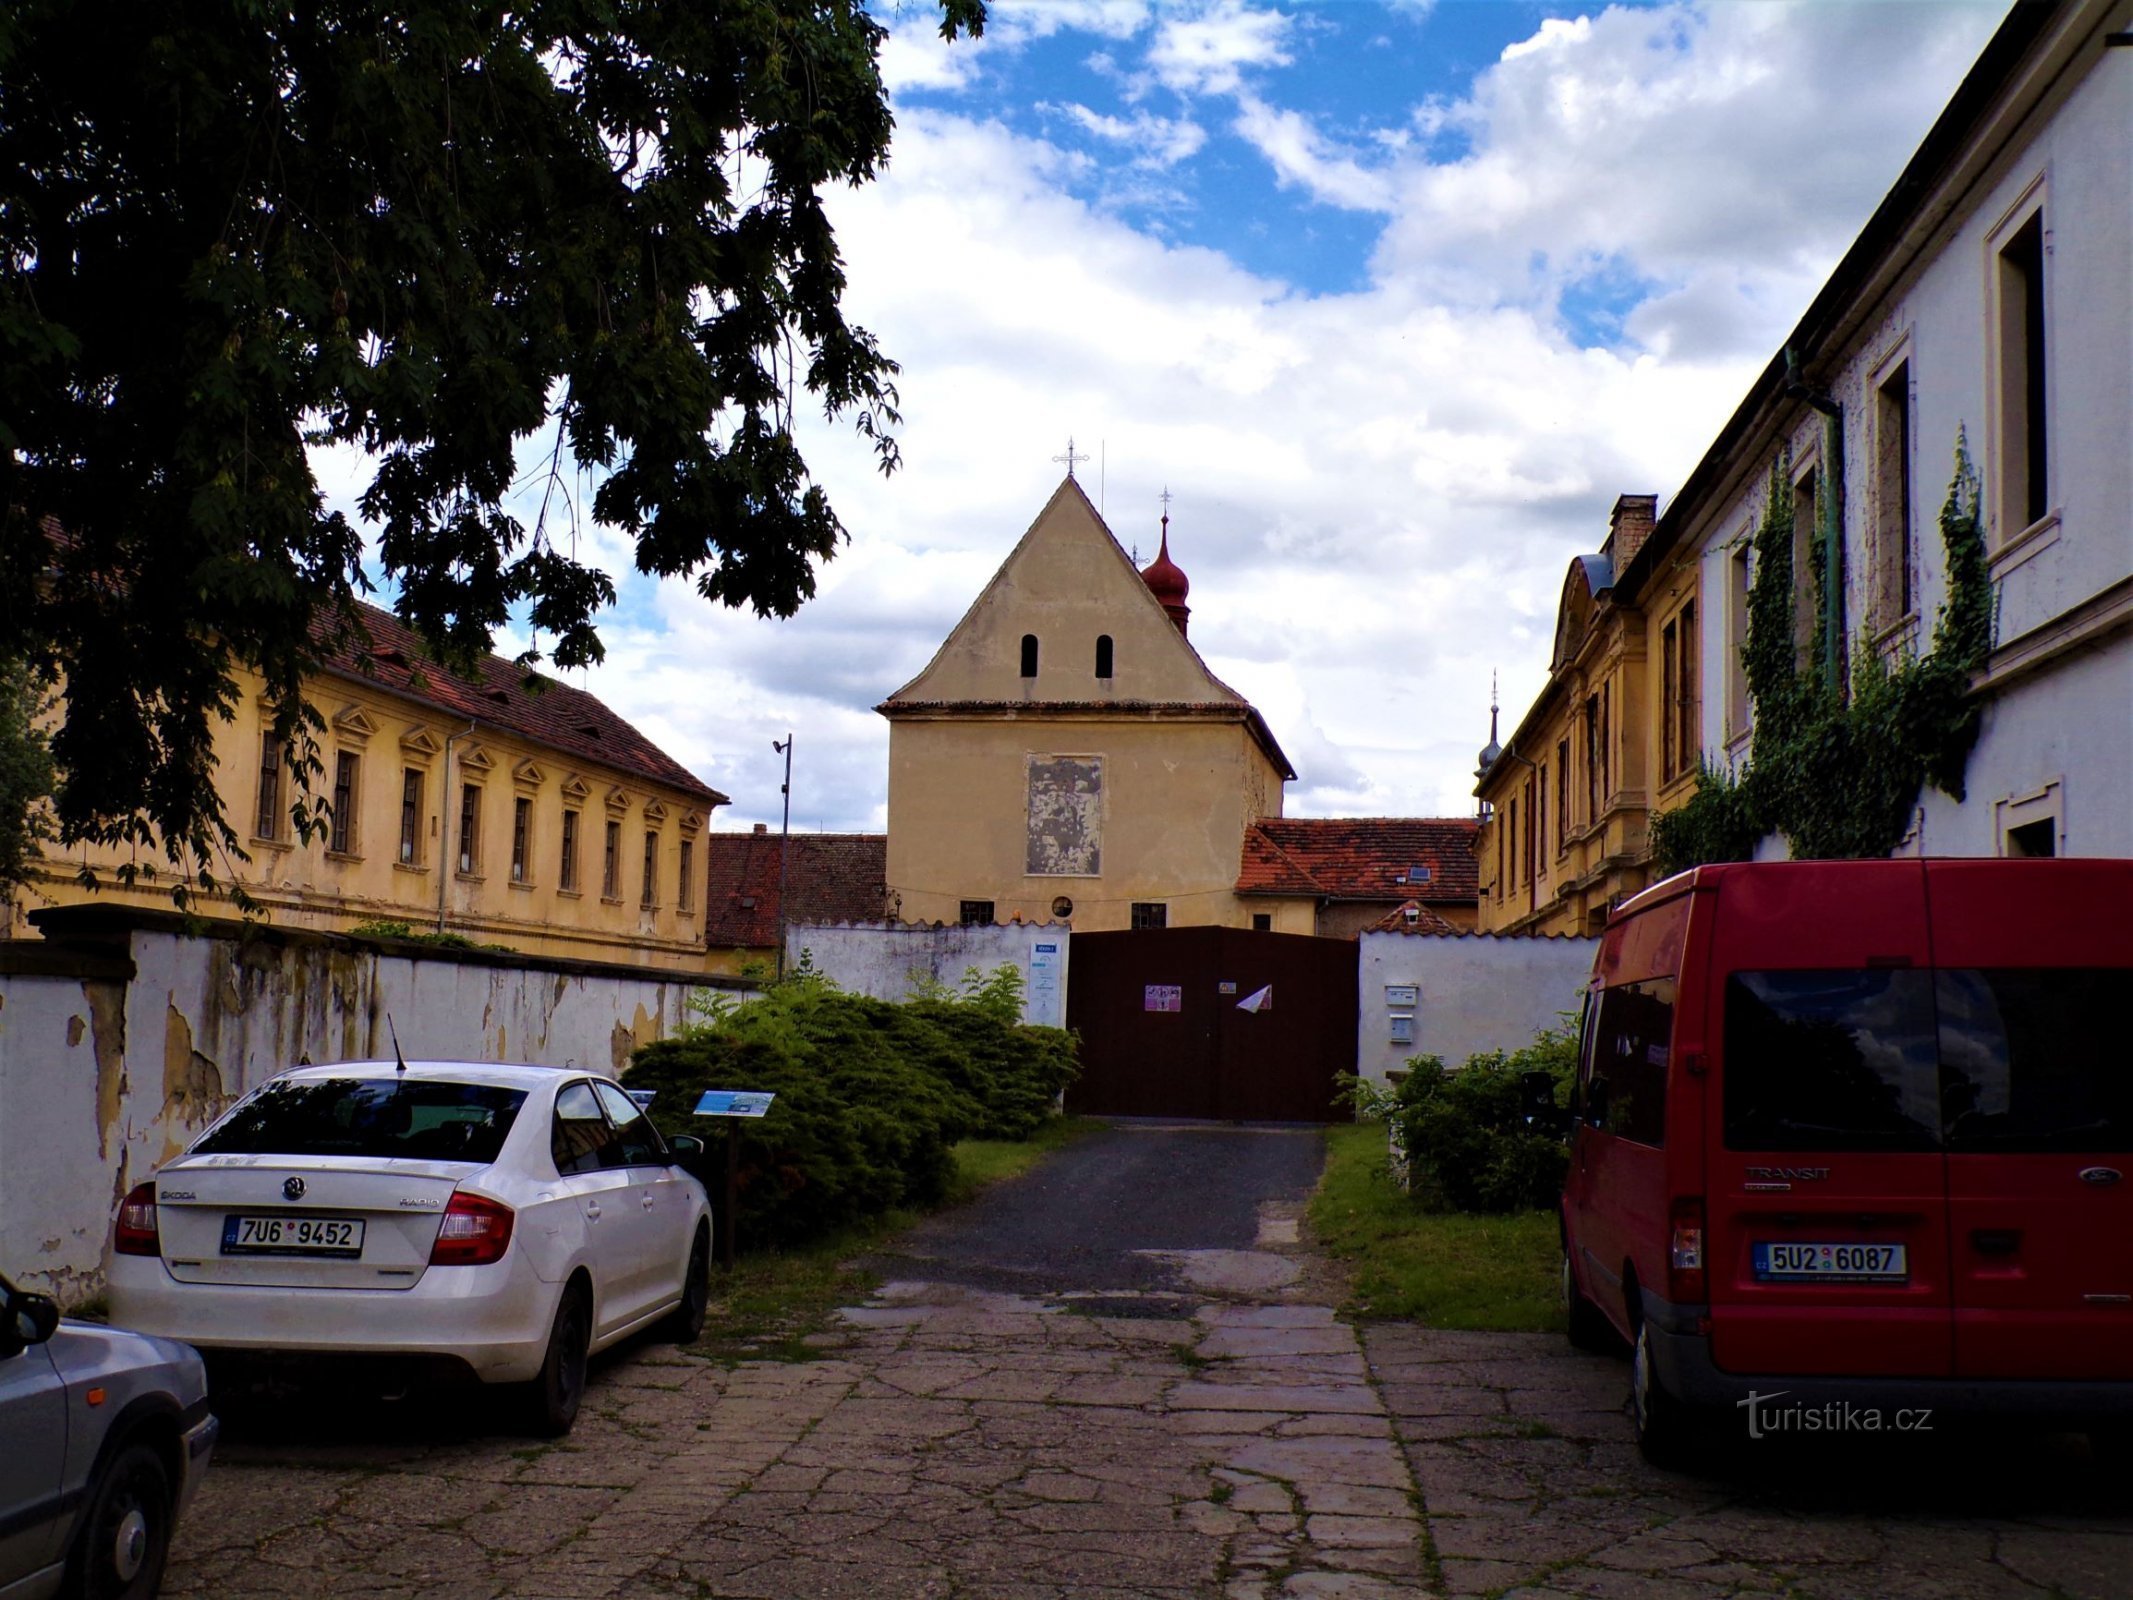 kirken St. Wenceslas med en del af det tidligere kapucinerkloster (Roudnice nad Labem, 9.7.2021. juli XNUMX)